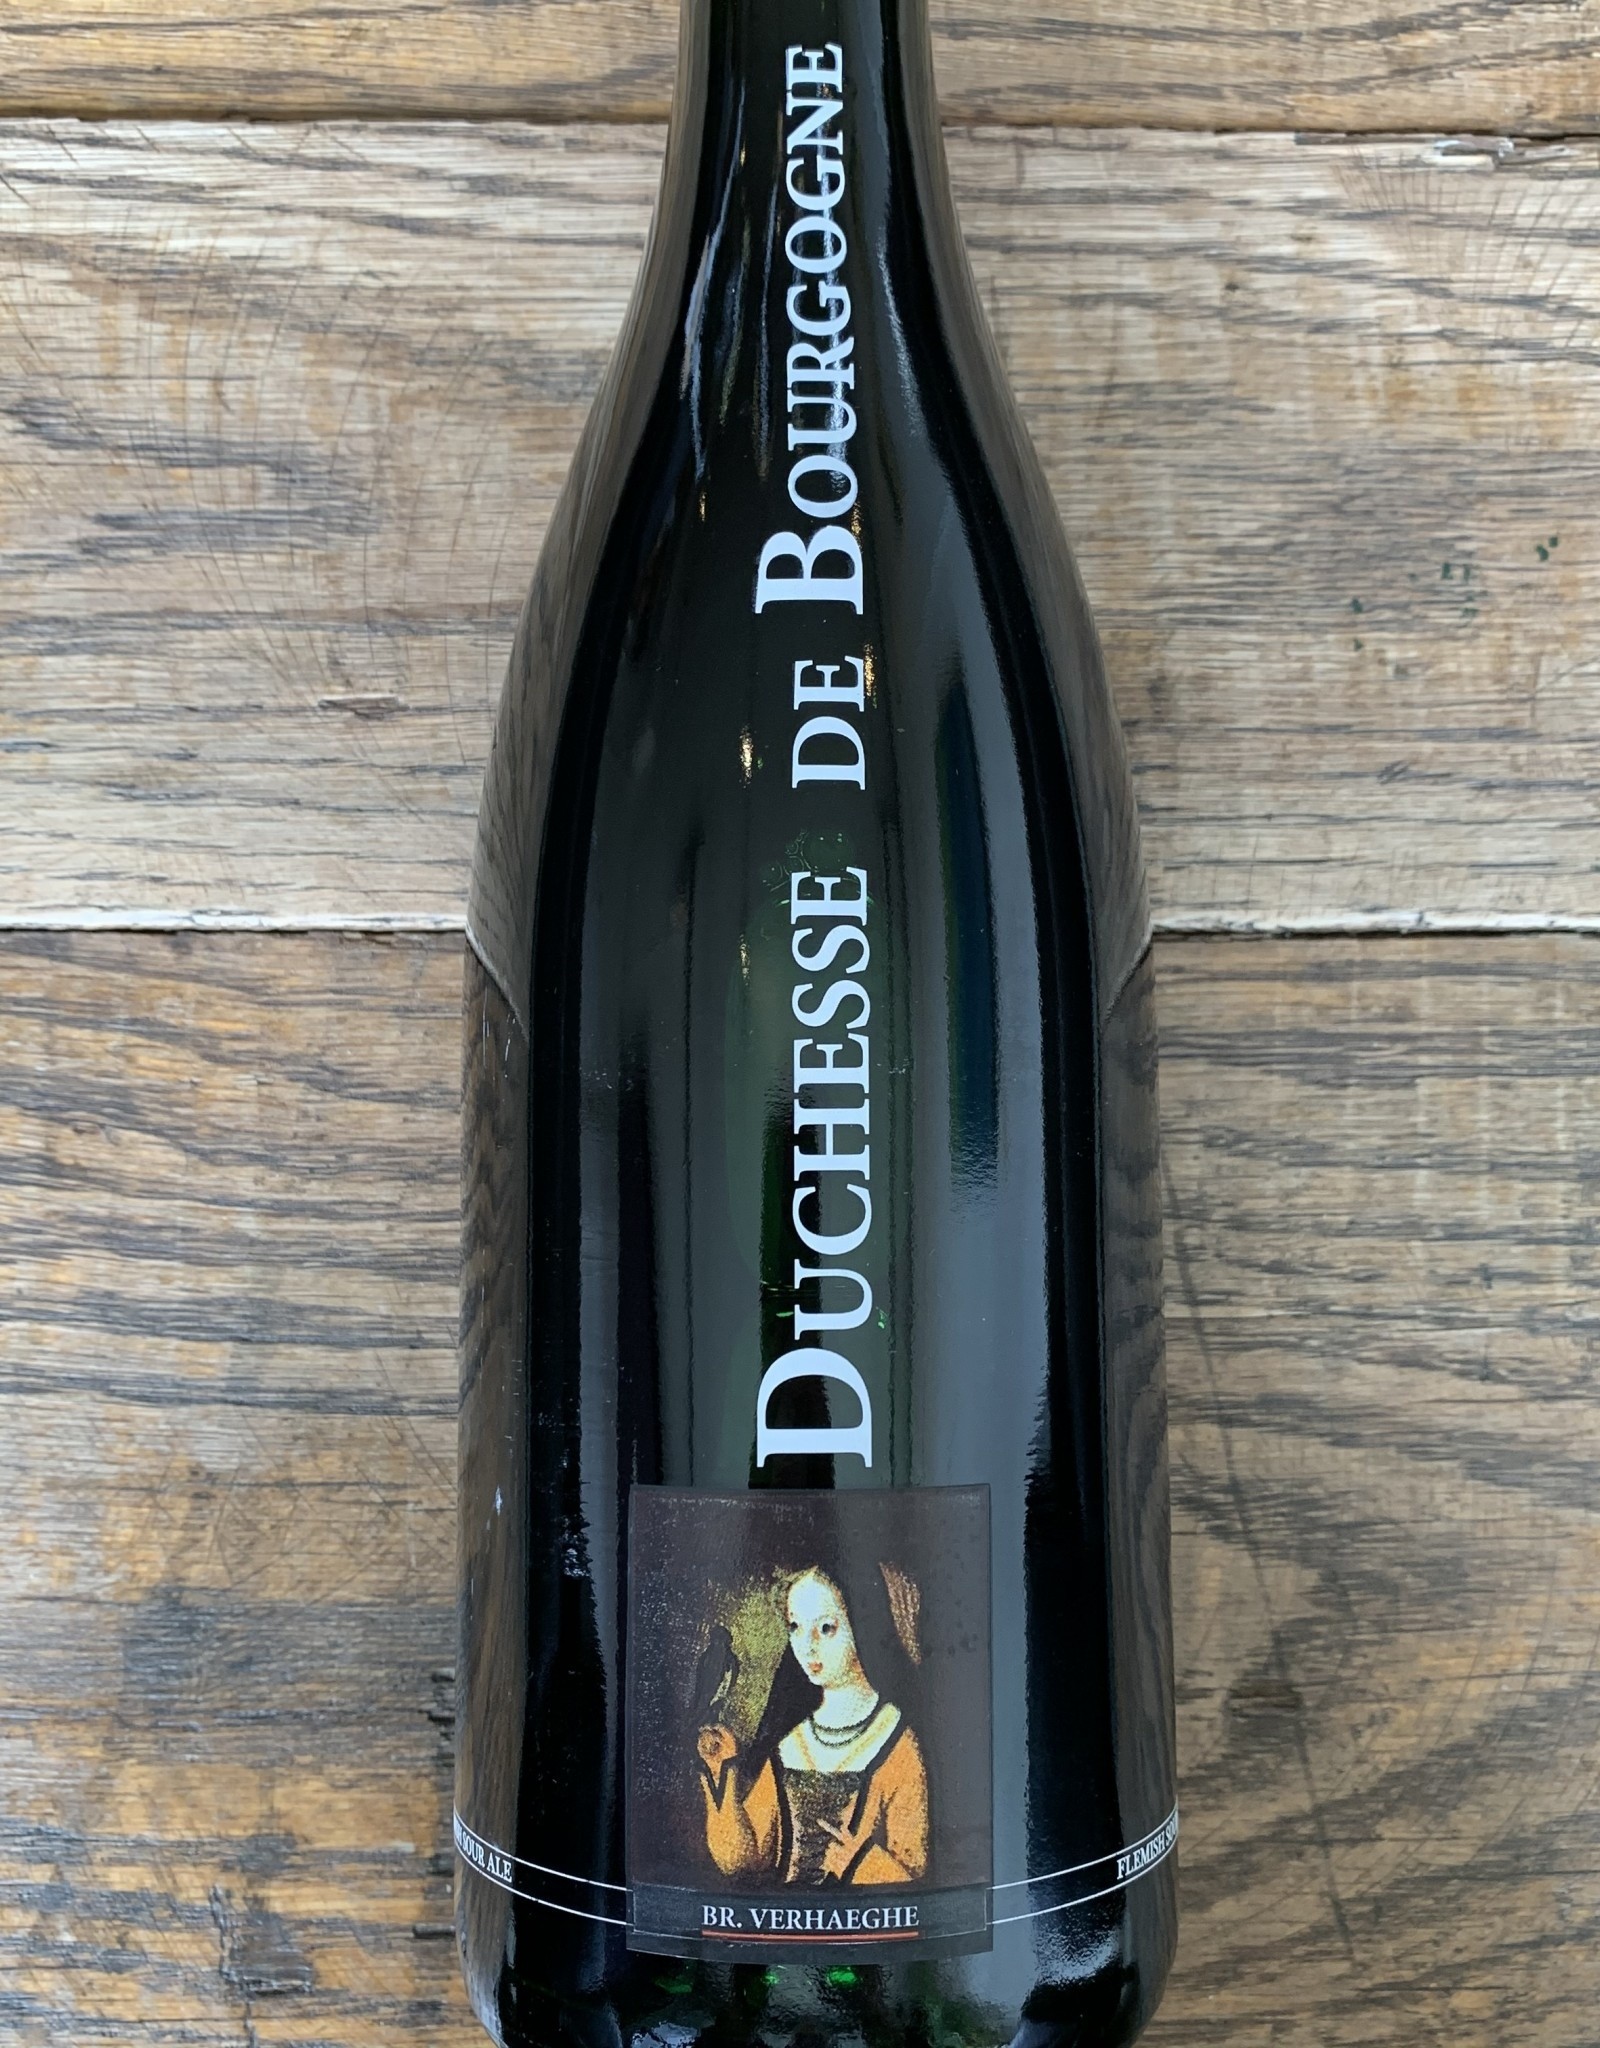 Brouwerij Verhaeghe Duchesse De Bourgogne Flanders Red Ale 750ml